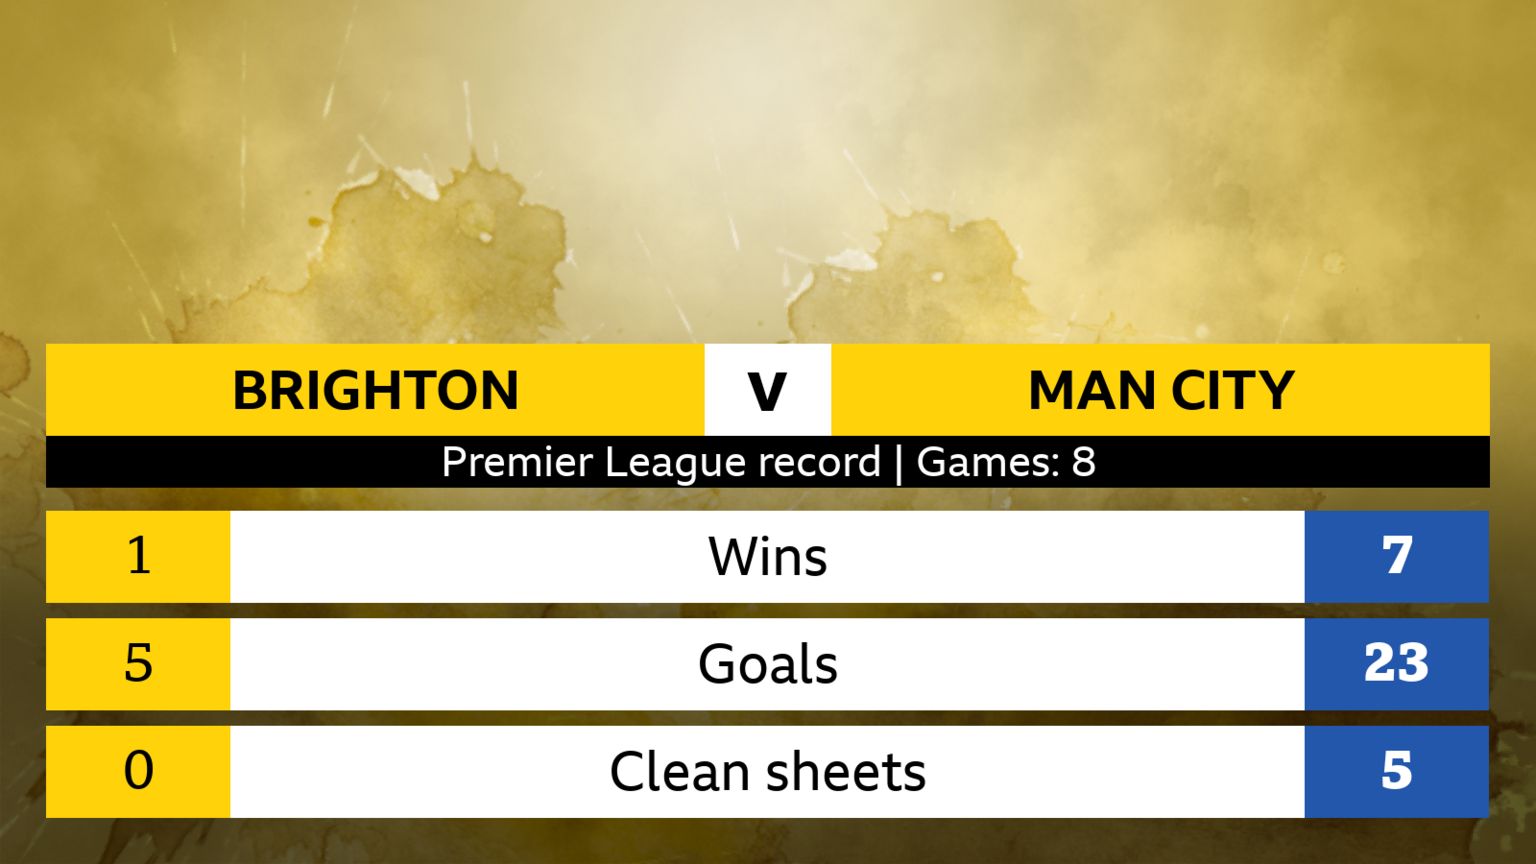 Brighton v Manchester City Premier League head-to-head record, eight games. Brighton: 1 win, 5 goals, 0 clean sheets. Man City: 7 wins, 23 goals, 5 clean sheets.